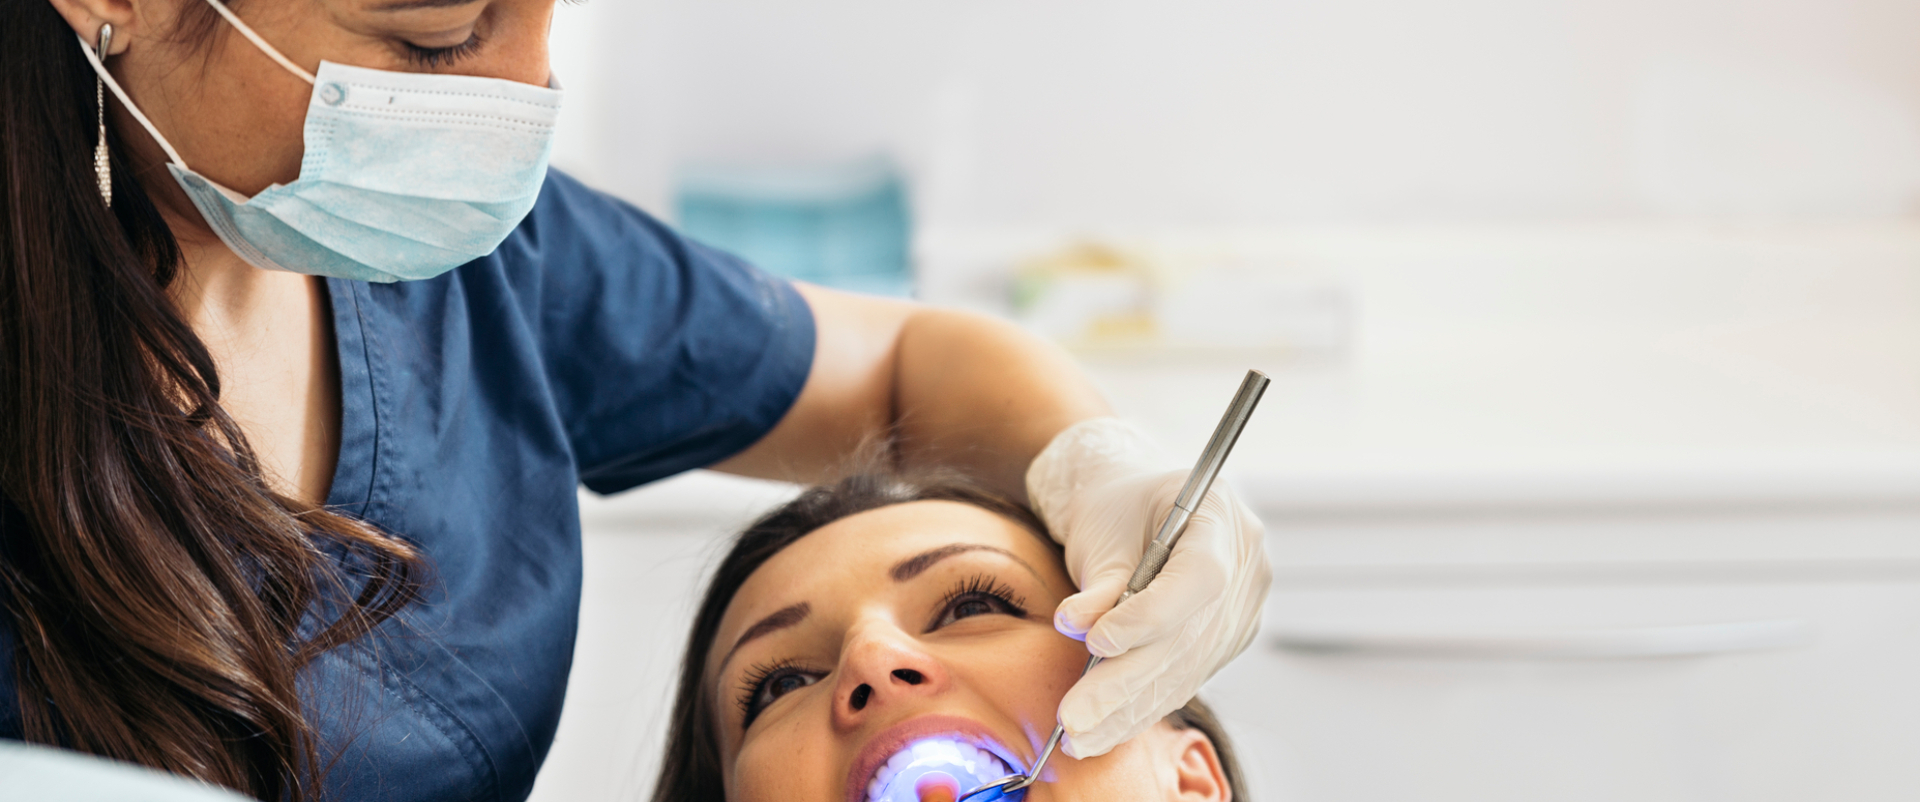 10 Best Practices for Dental Billing 2015